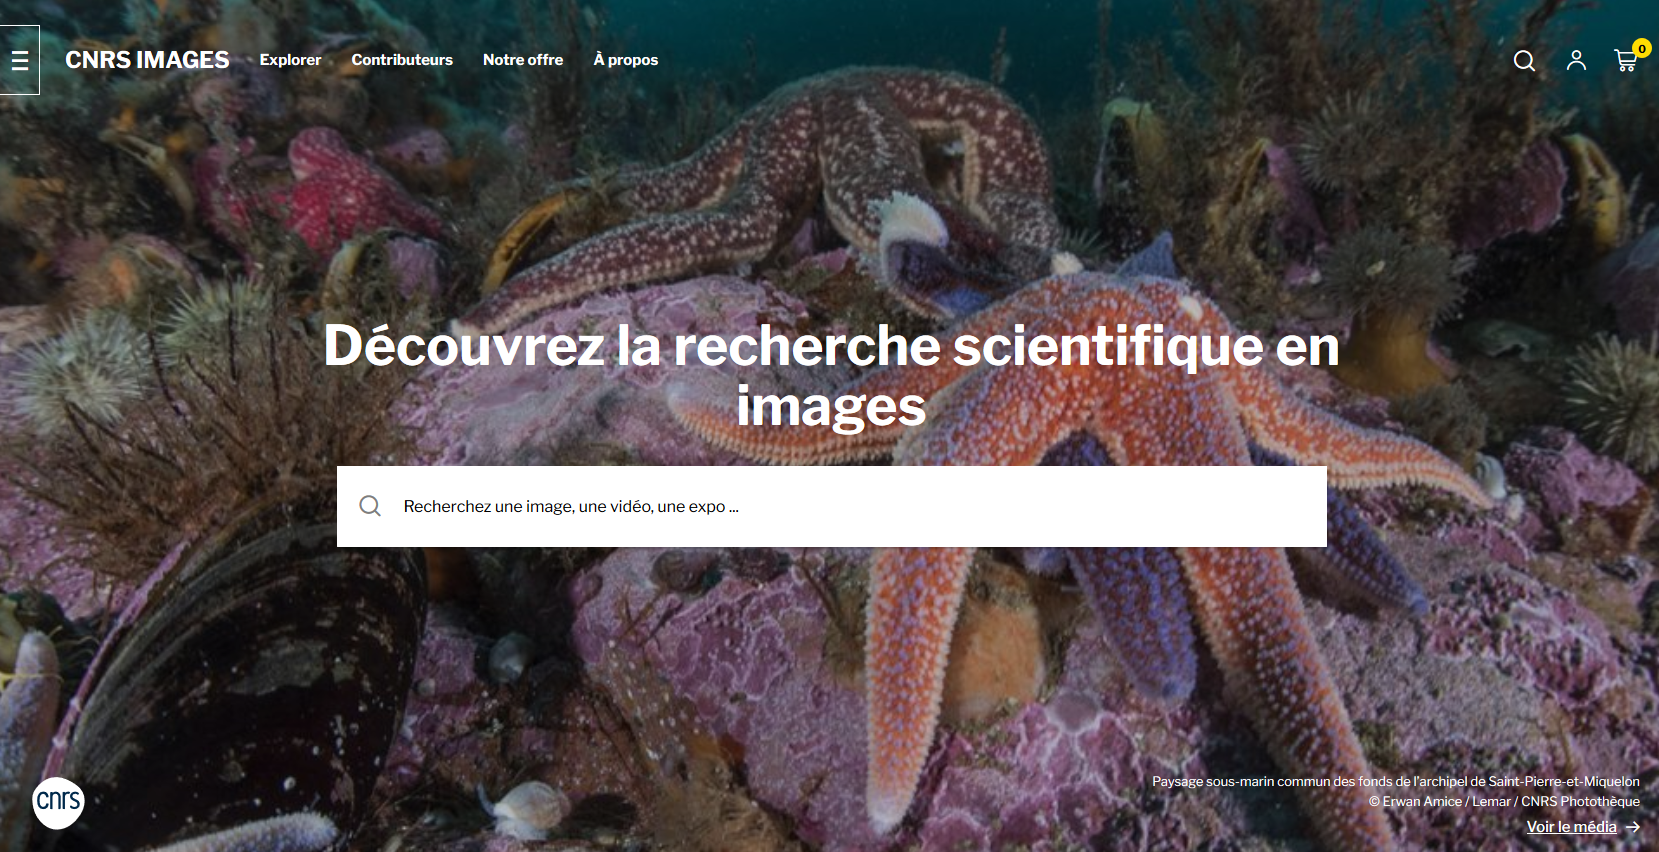 CNRS Images